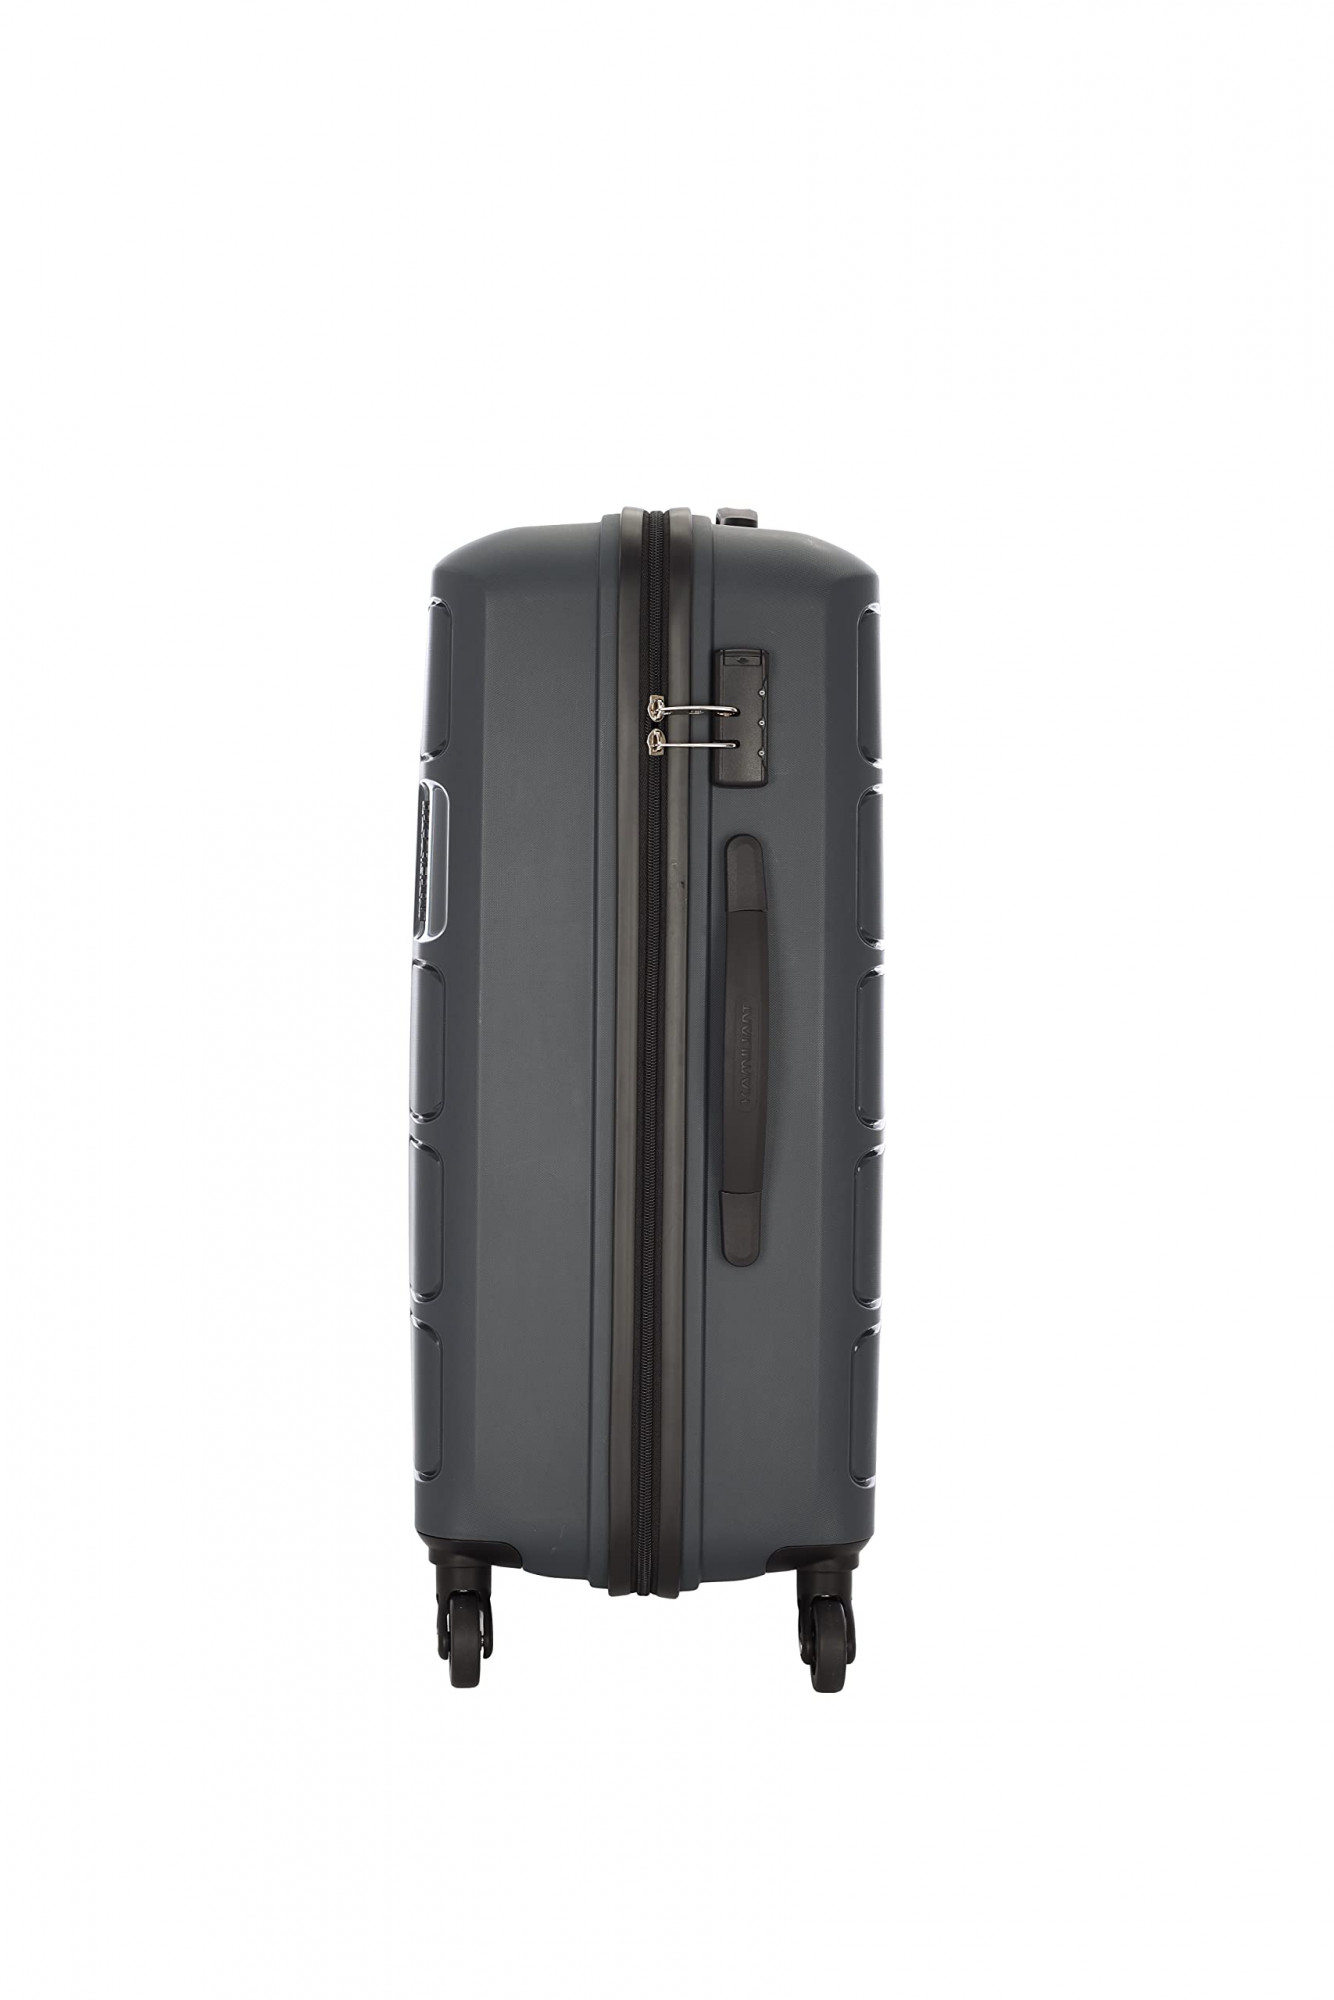 Kamiliant by American Tourister Hard Body Set of 3 Luggage - TRIPRISM  SPINNER 3PC SET BLACK - Black | Dealsmagnet.com